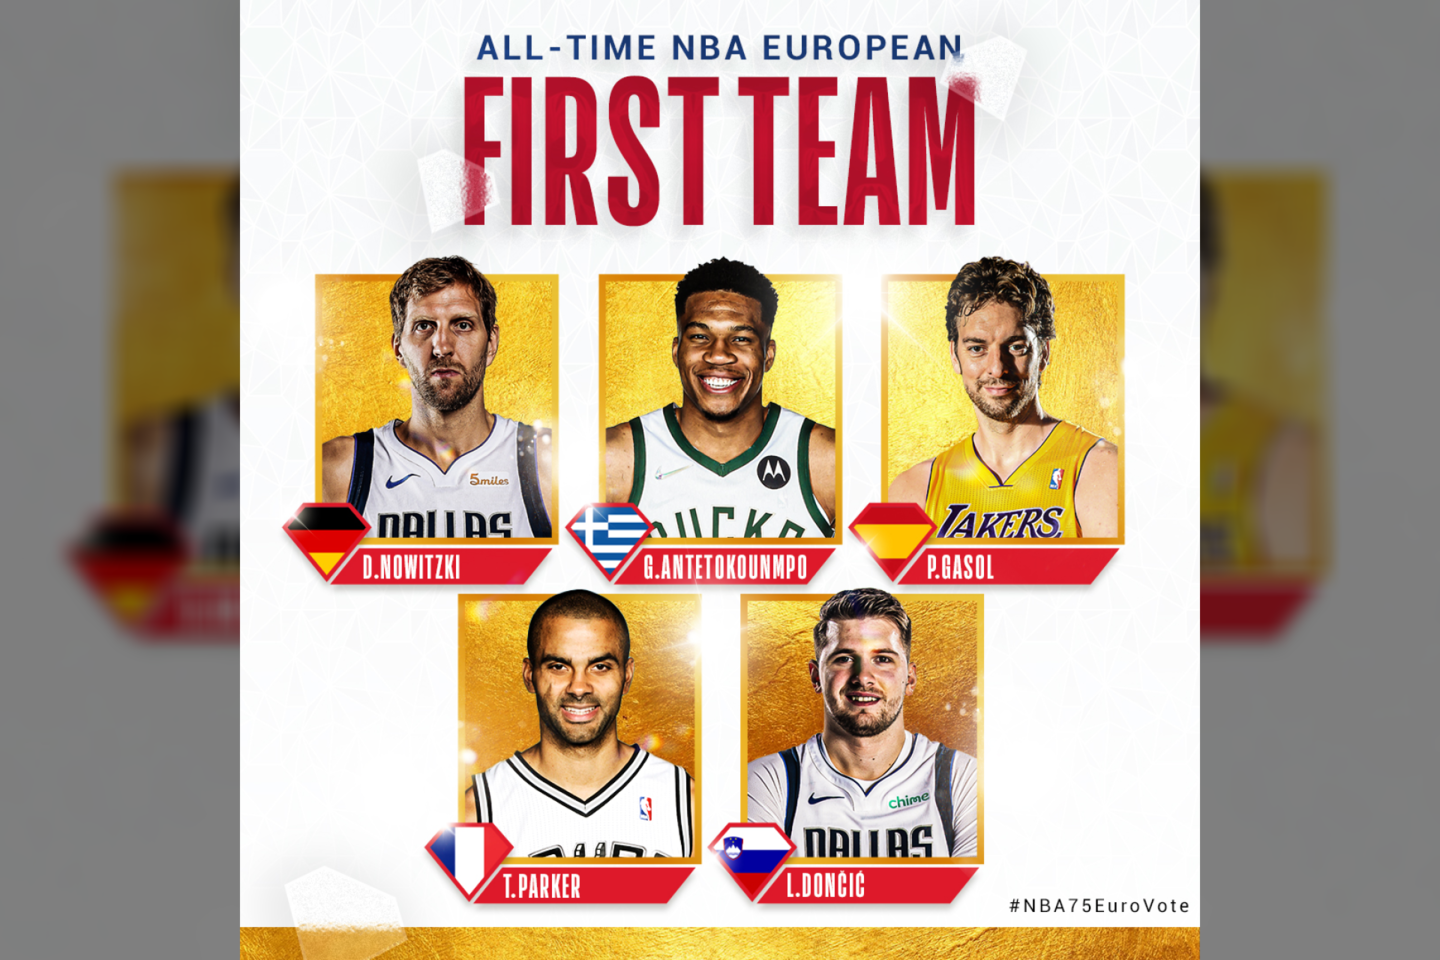  Pirmoji europiečių NBA komanda